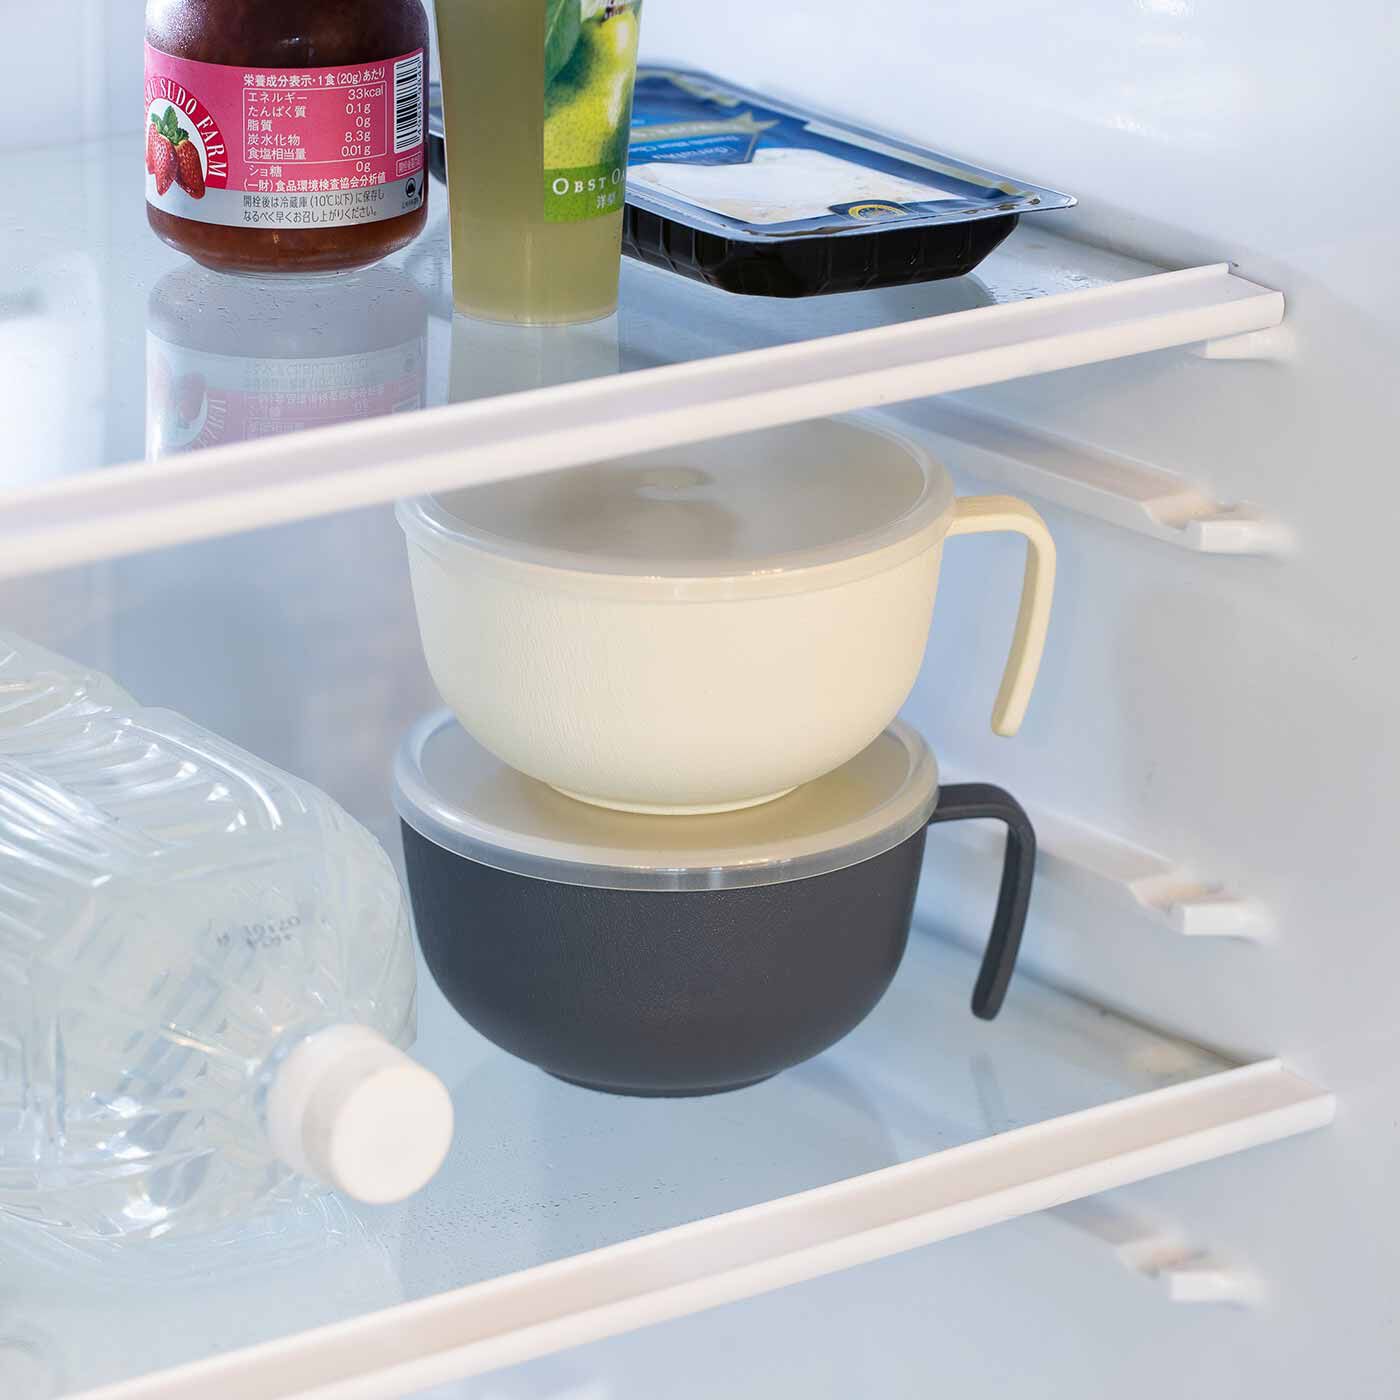 Real Stock|ラミプリュス　L字の持ち手が収納に便利！ 調理保存・あたためまでできる ふた付きマルチカップ|ふたをして冷蔵庫で保存もおまかせ。積み重ねられるので省スペース。